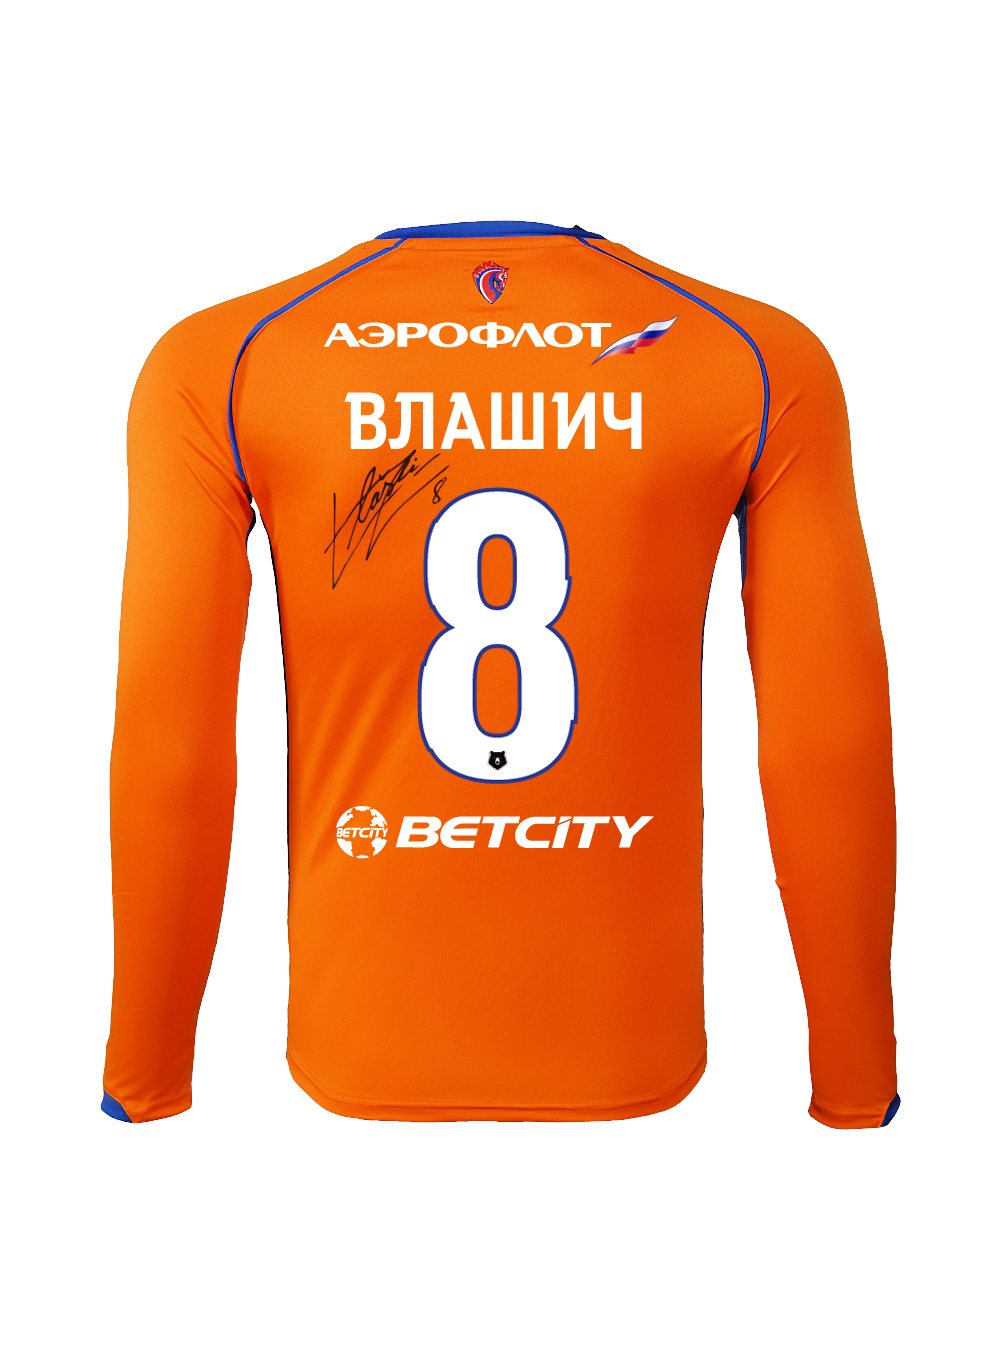 Купить Футболка игровая резервная с длинным рукавом с автографом ВЛАШИЧА (XL) по Нижнему Новгороду